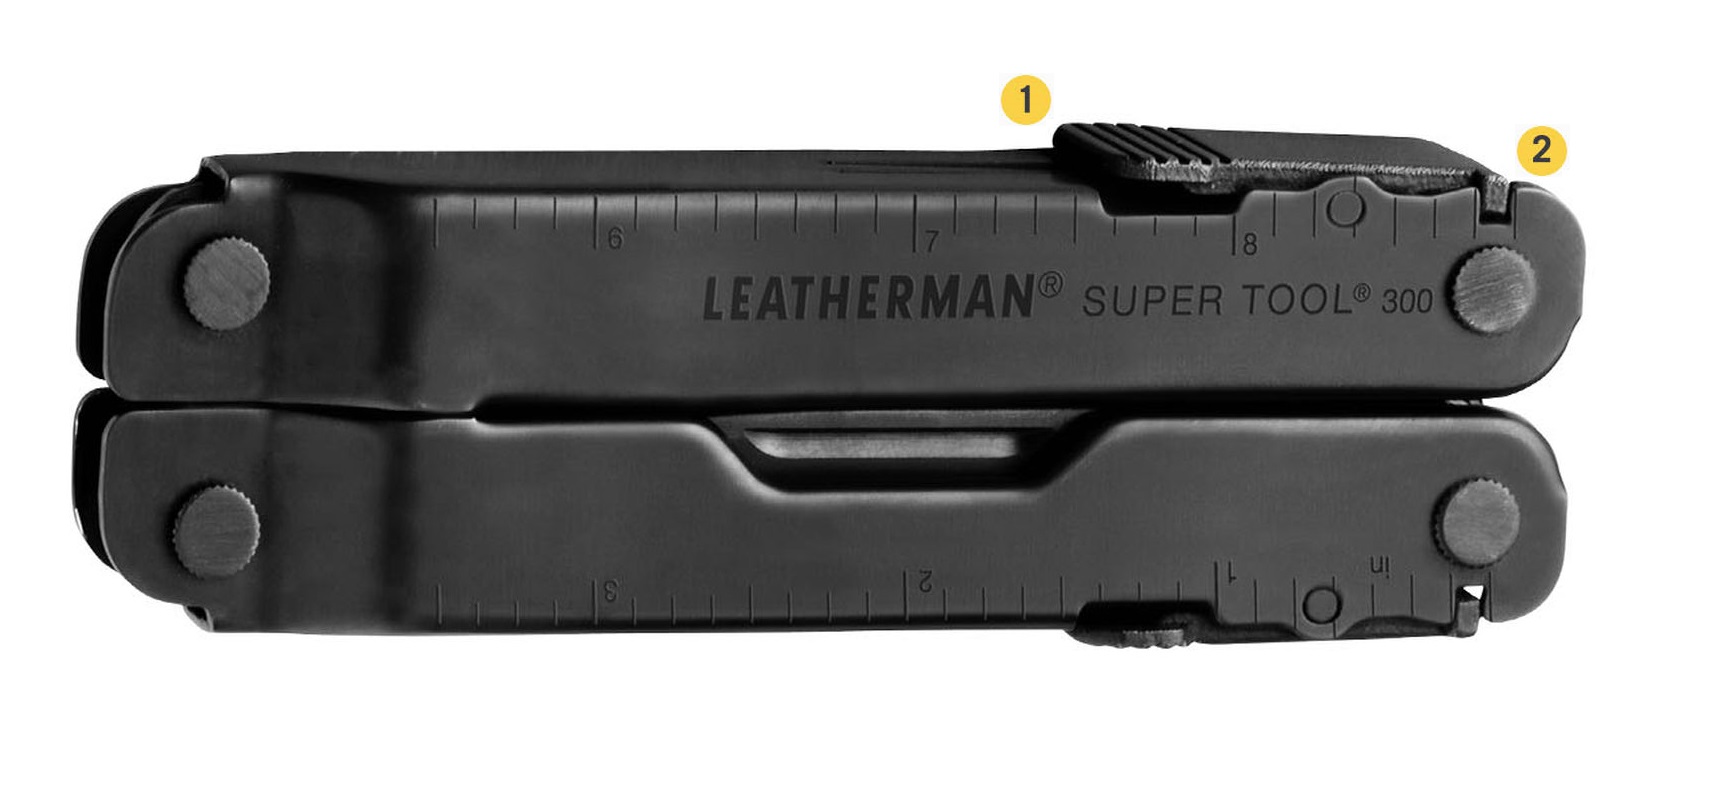 Мультитул Leatherman Super Tool 300 с надежной фиксацией и блокировкой 